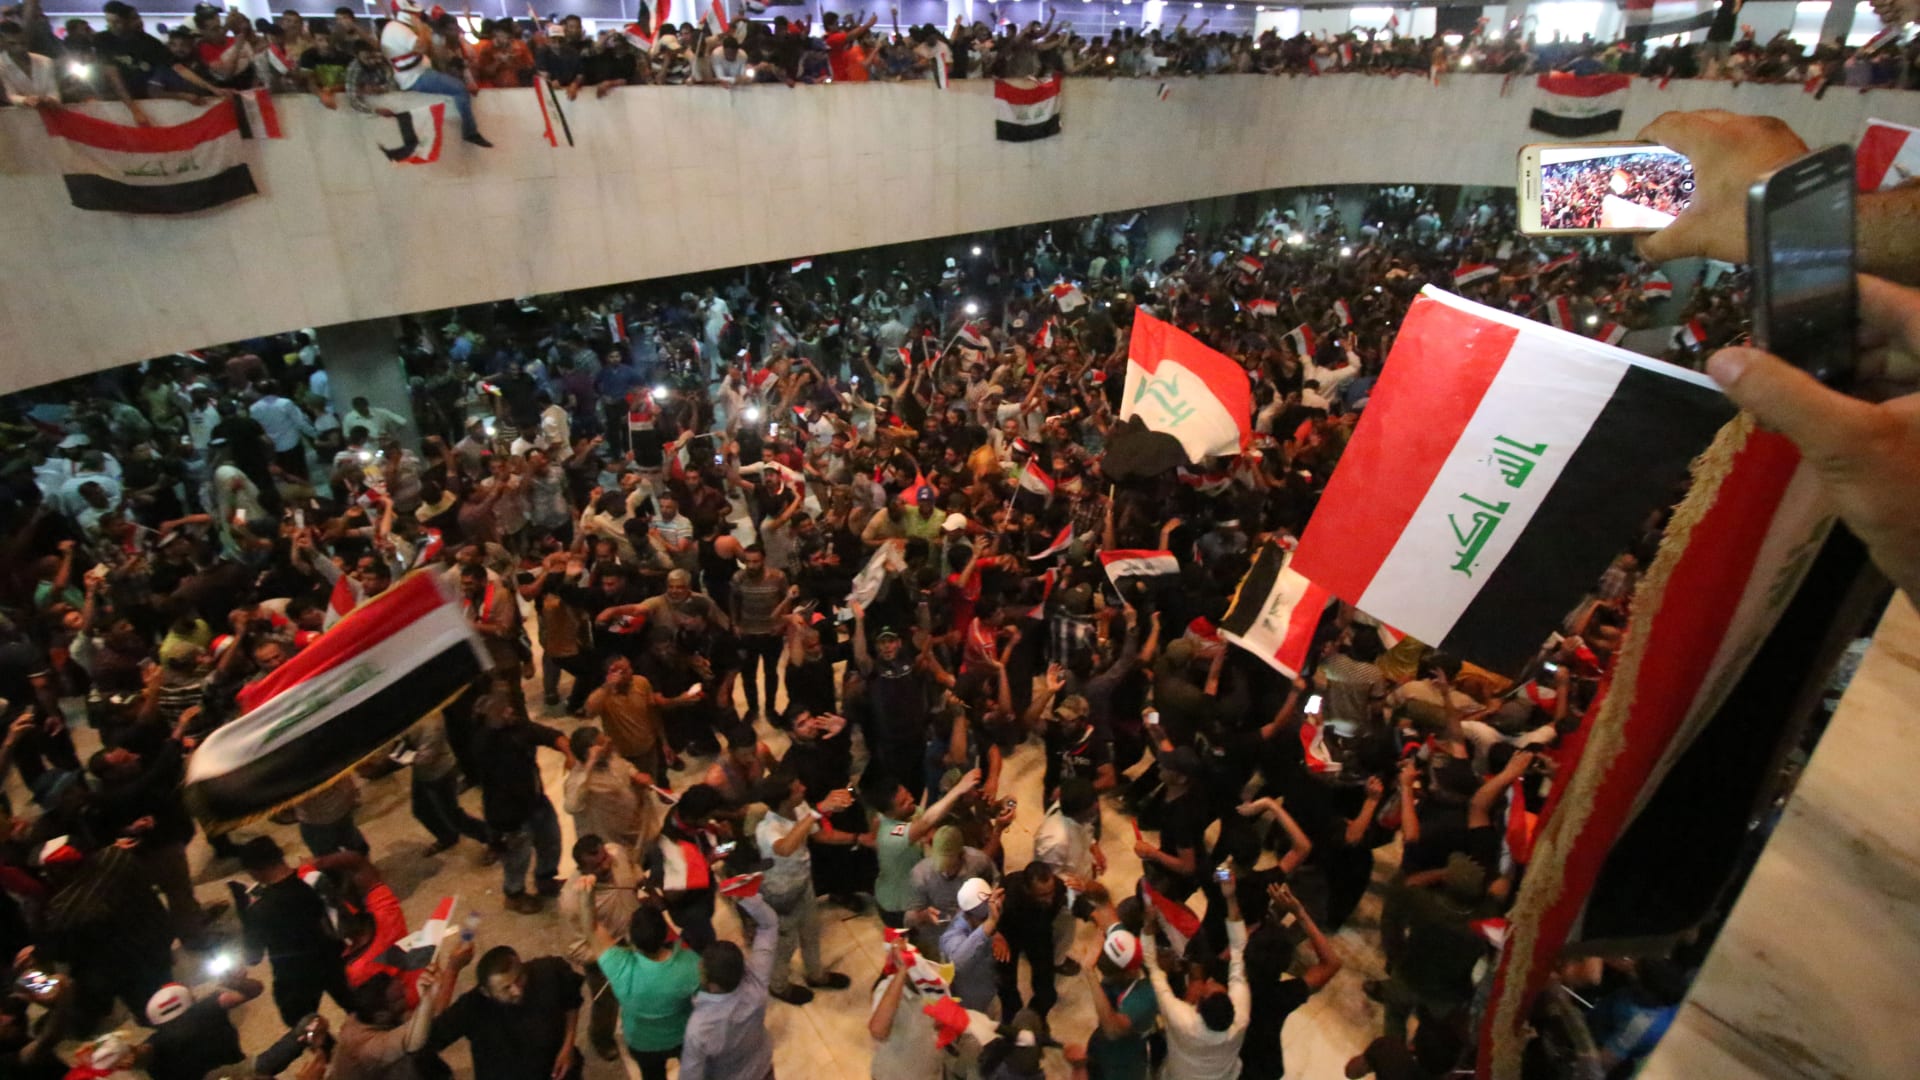 شاهد لحظة اقتحام أنصار الصدر البرلمان العراقي داخل المنطقة الخضراء شديدة التحصين